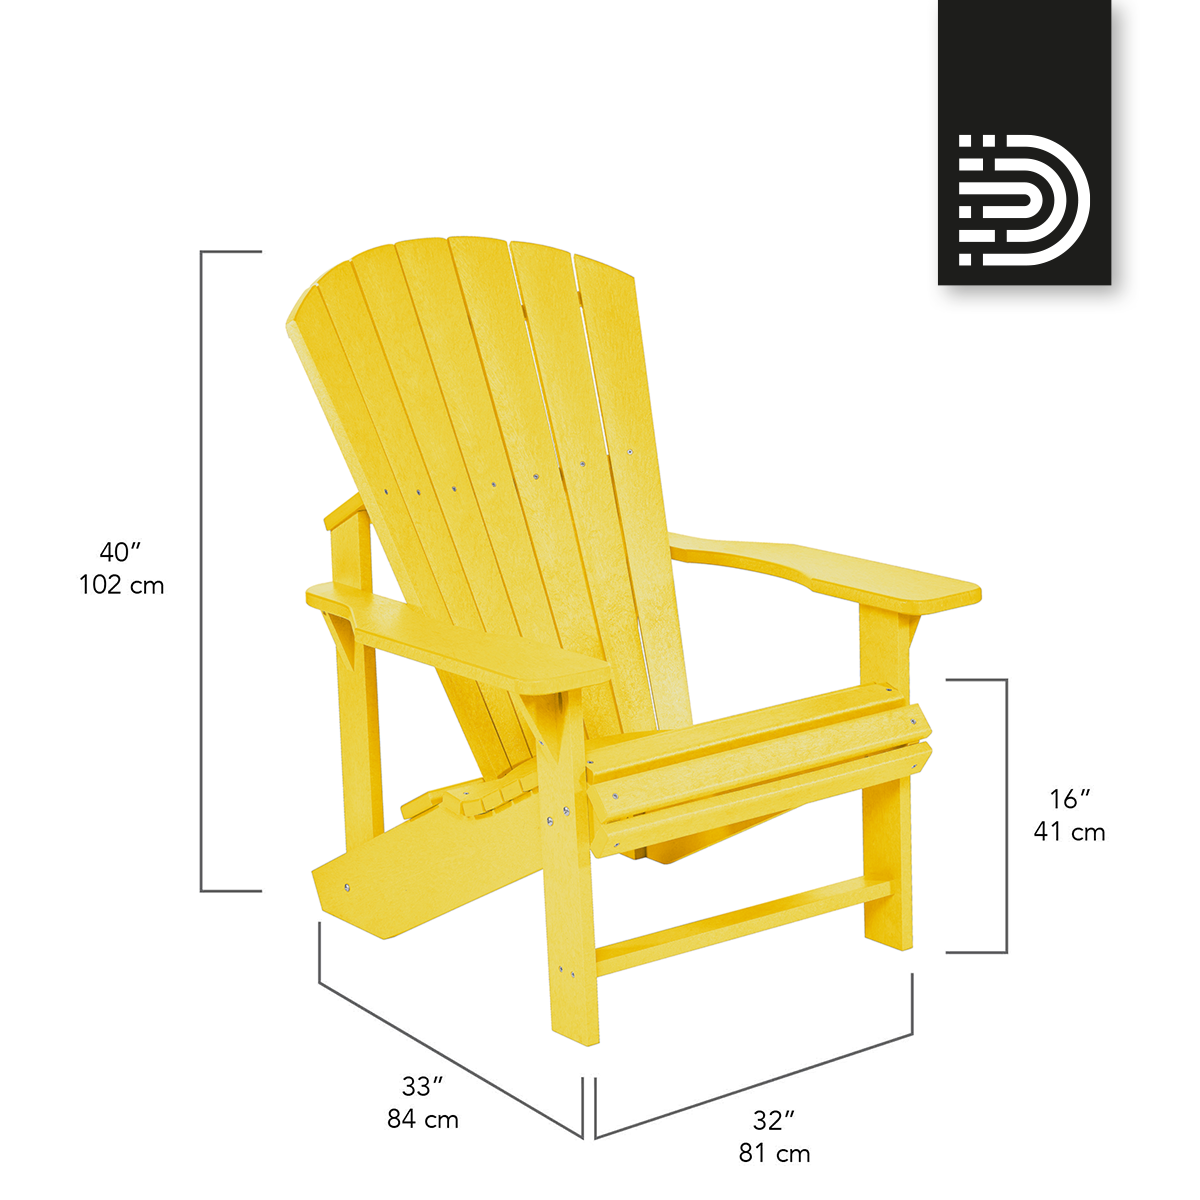  C01 Classic Adirondack Chair - yellow 04